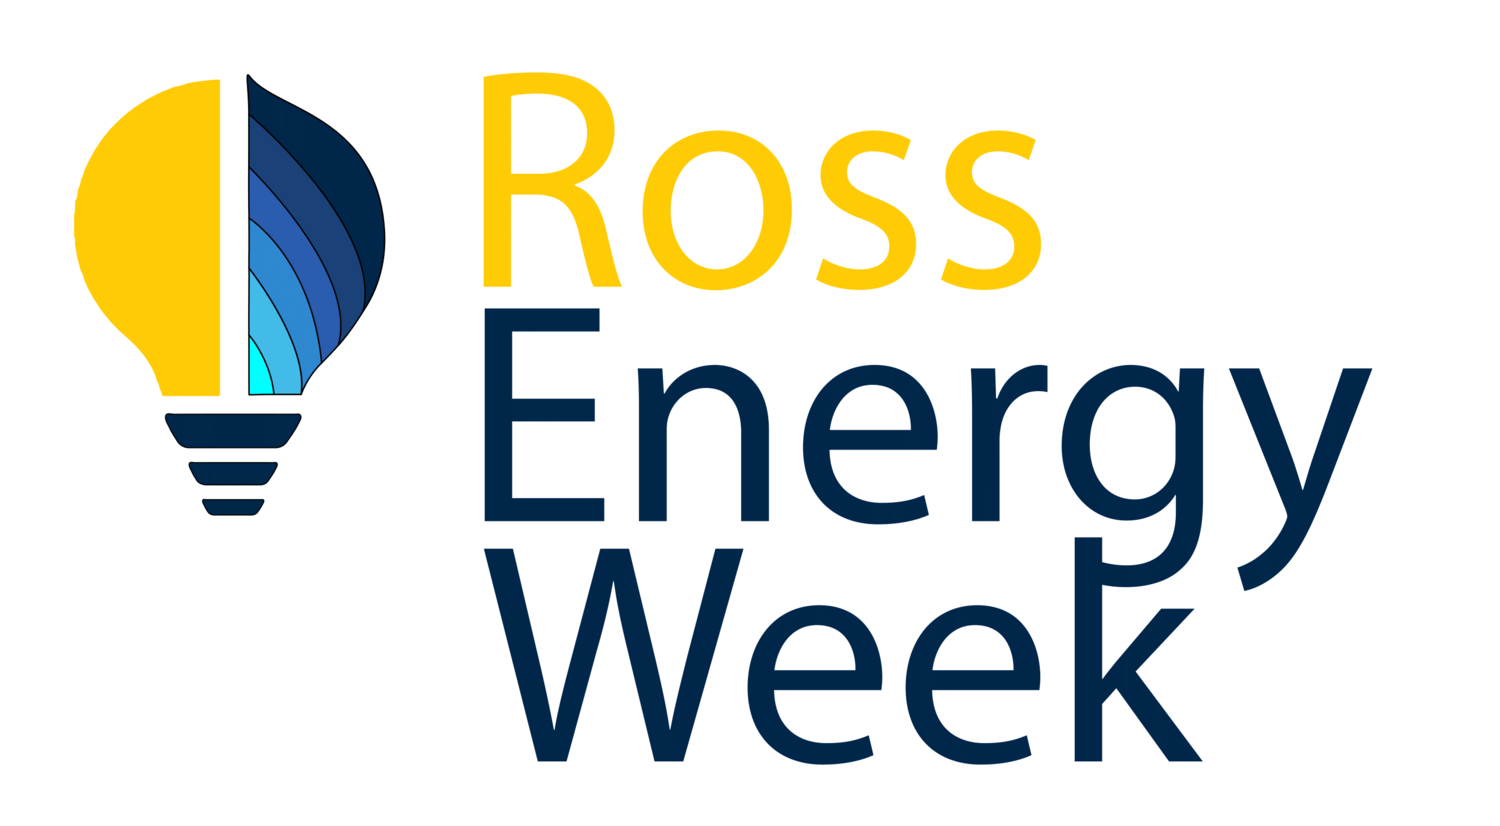 Ross Energy Week